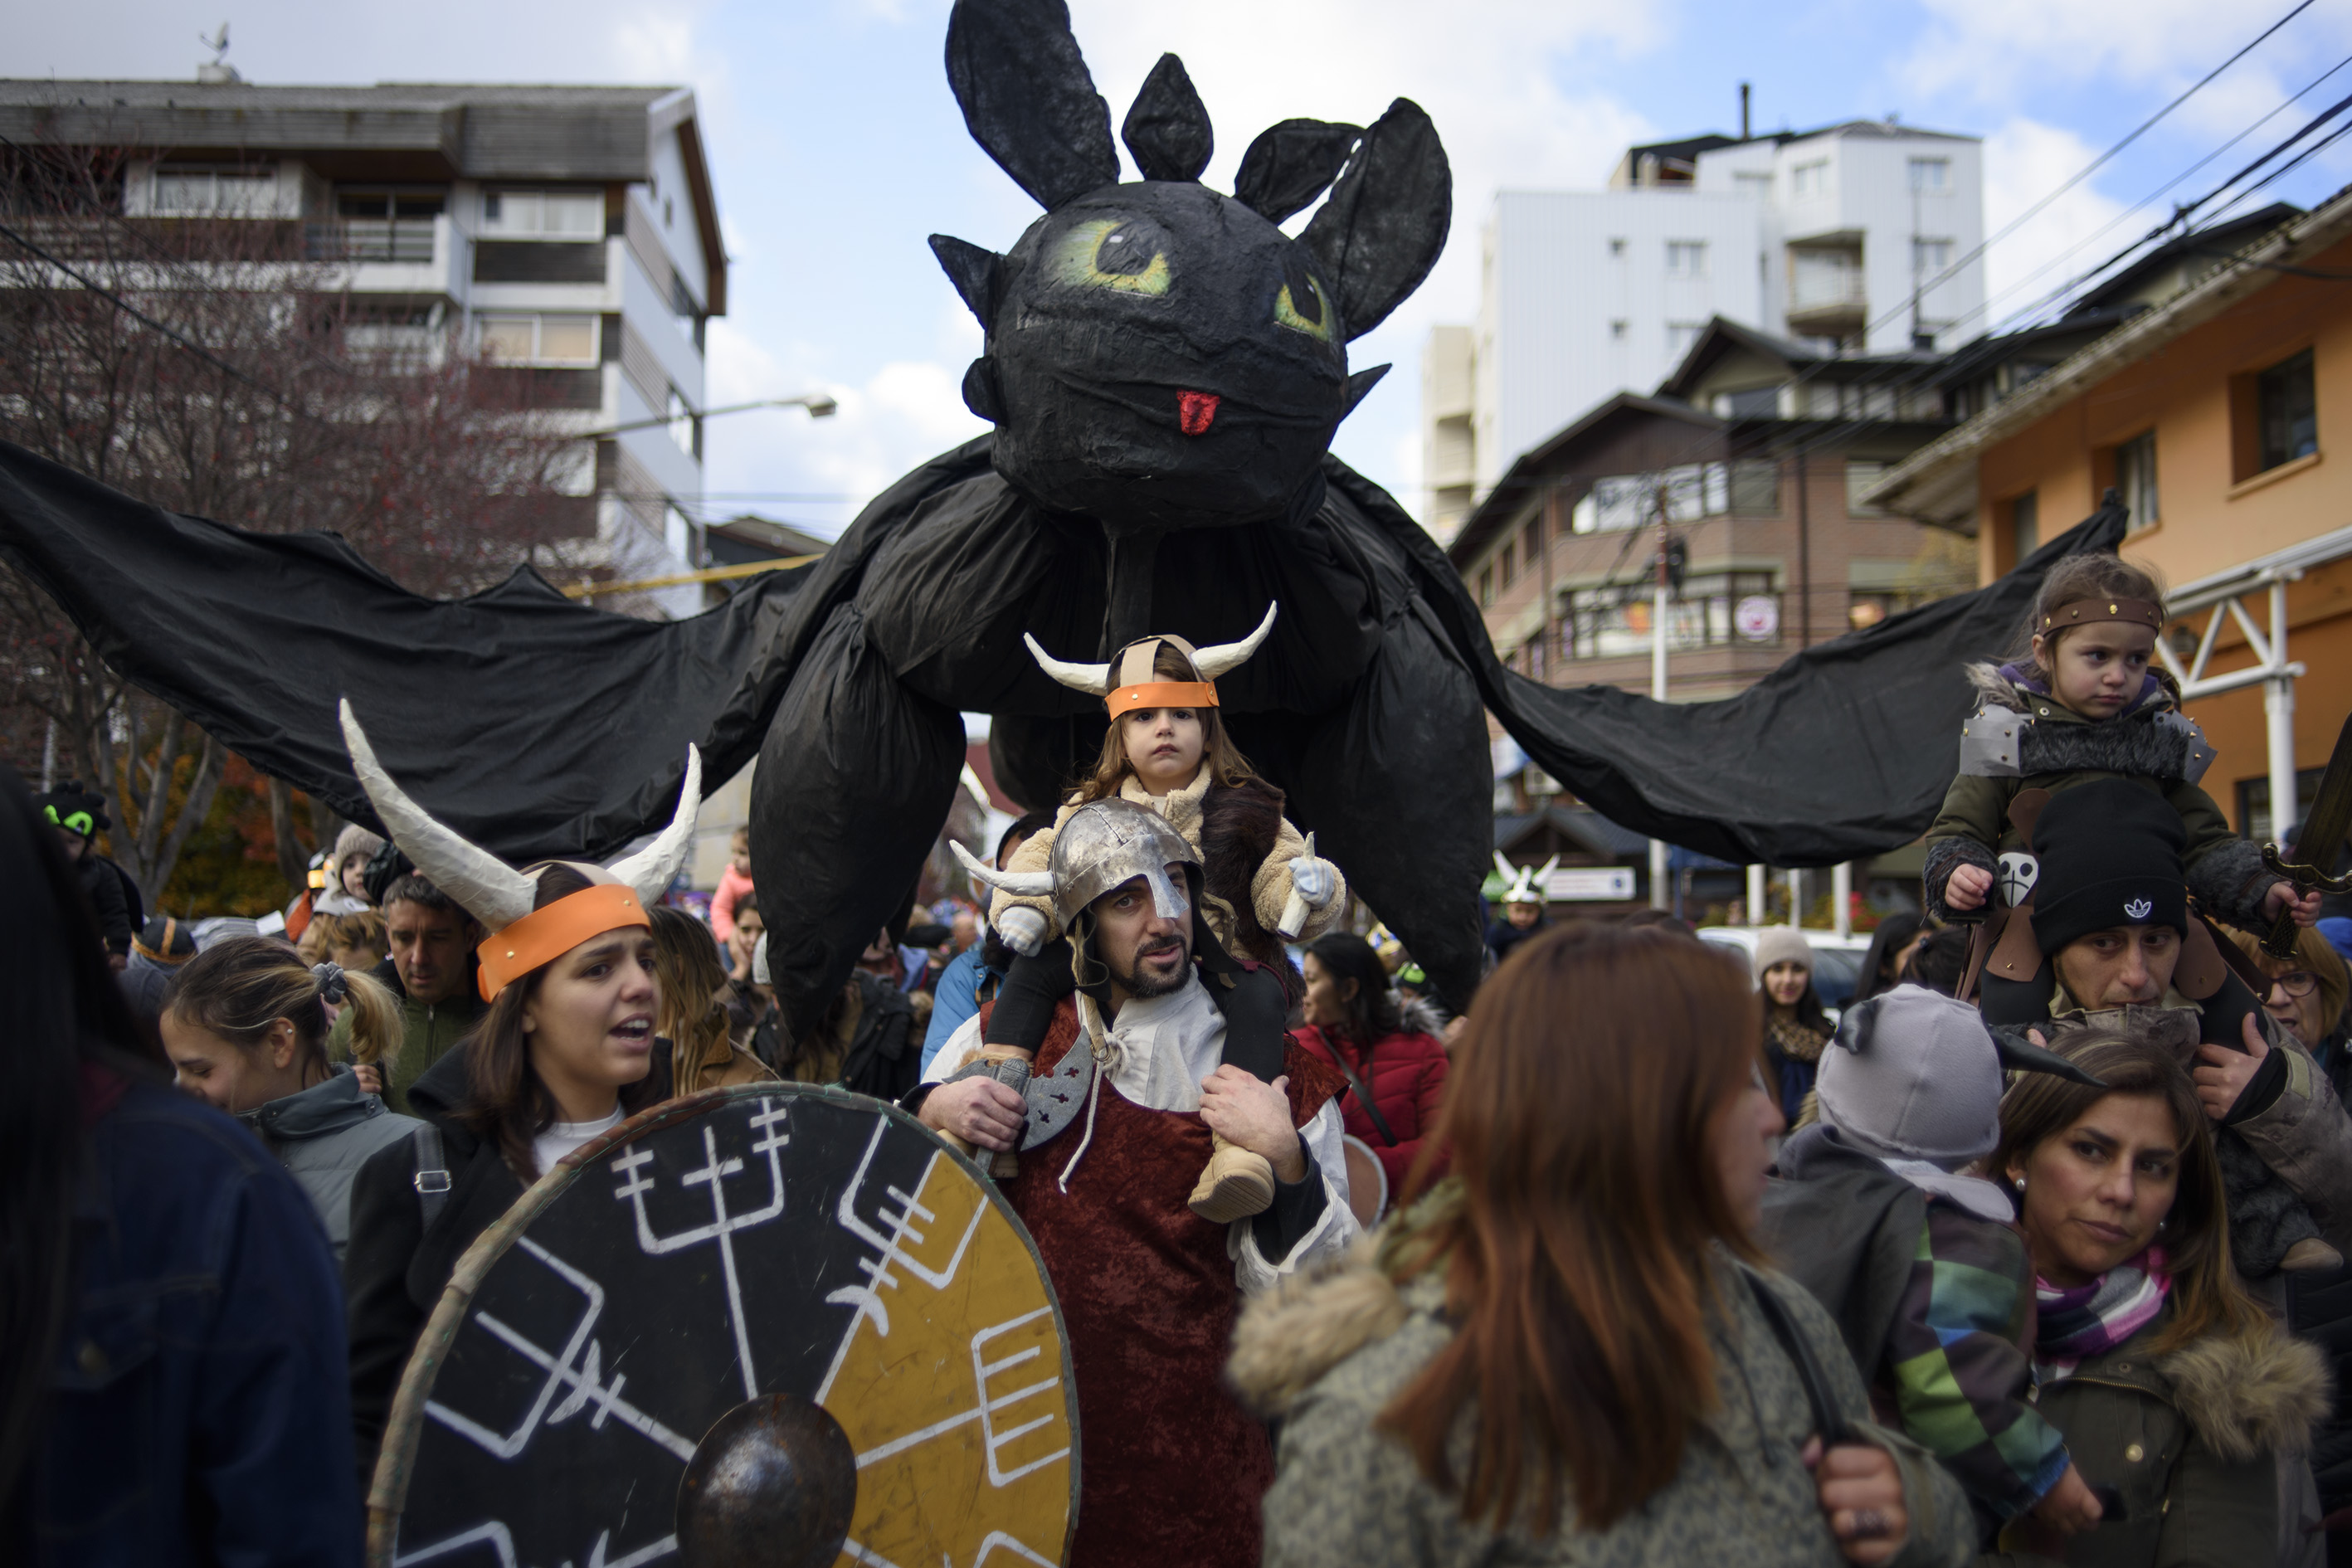 El "gato araña" sobrevoló el desfile de gigantes que concluyó en el Centro Cívico. Foto: Marcelo Martínez